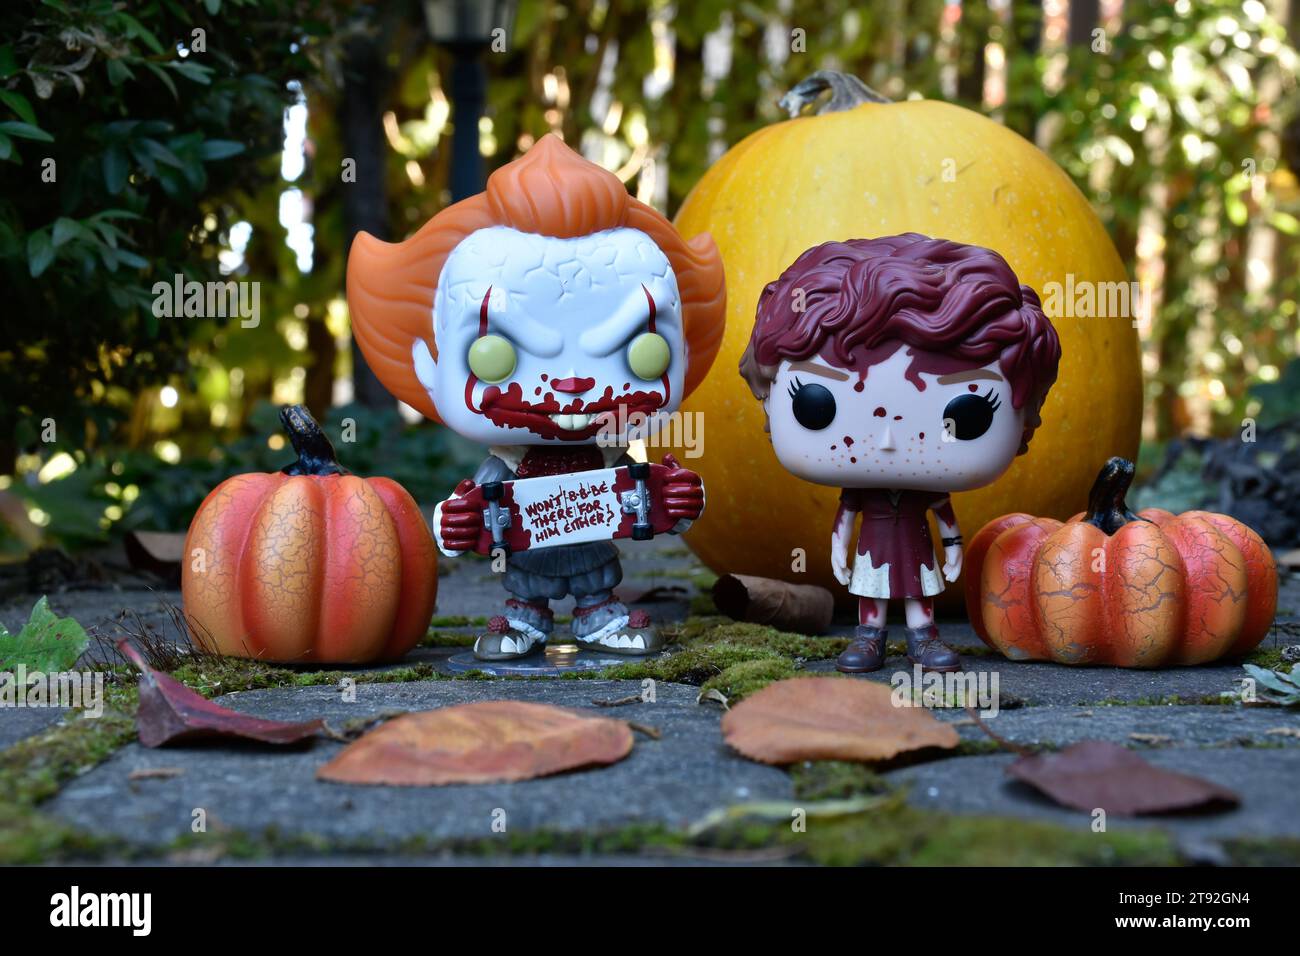 Figurines Funko Pop de Pennywise clown et Beverly Marsh du film d'horreur IT. Halloween, saison effrayante, citrouilles, décor, mousse, feuilles d'automne. Banque D'Images